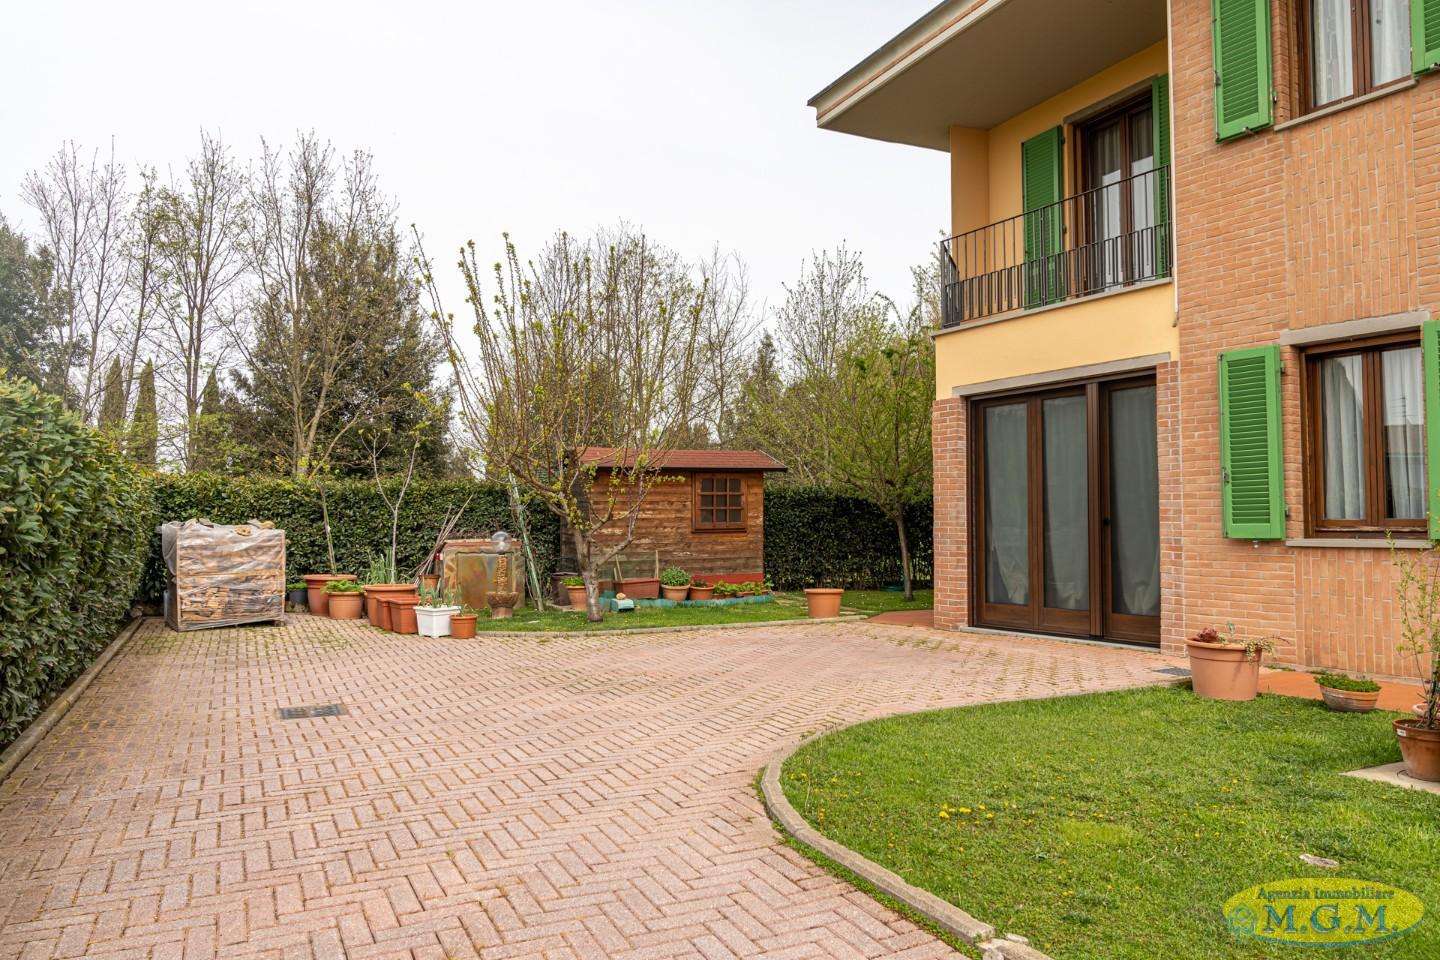 Casa Bi - Trifamiliare in Vendita a Santa Croce sull'Arno Via di Ripa,